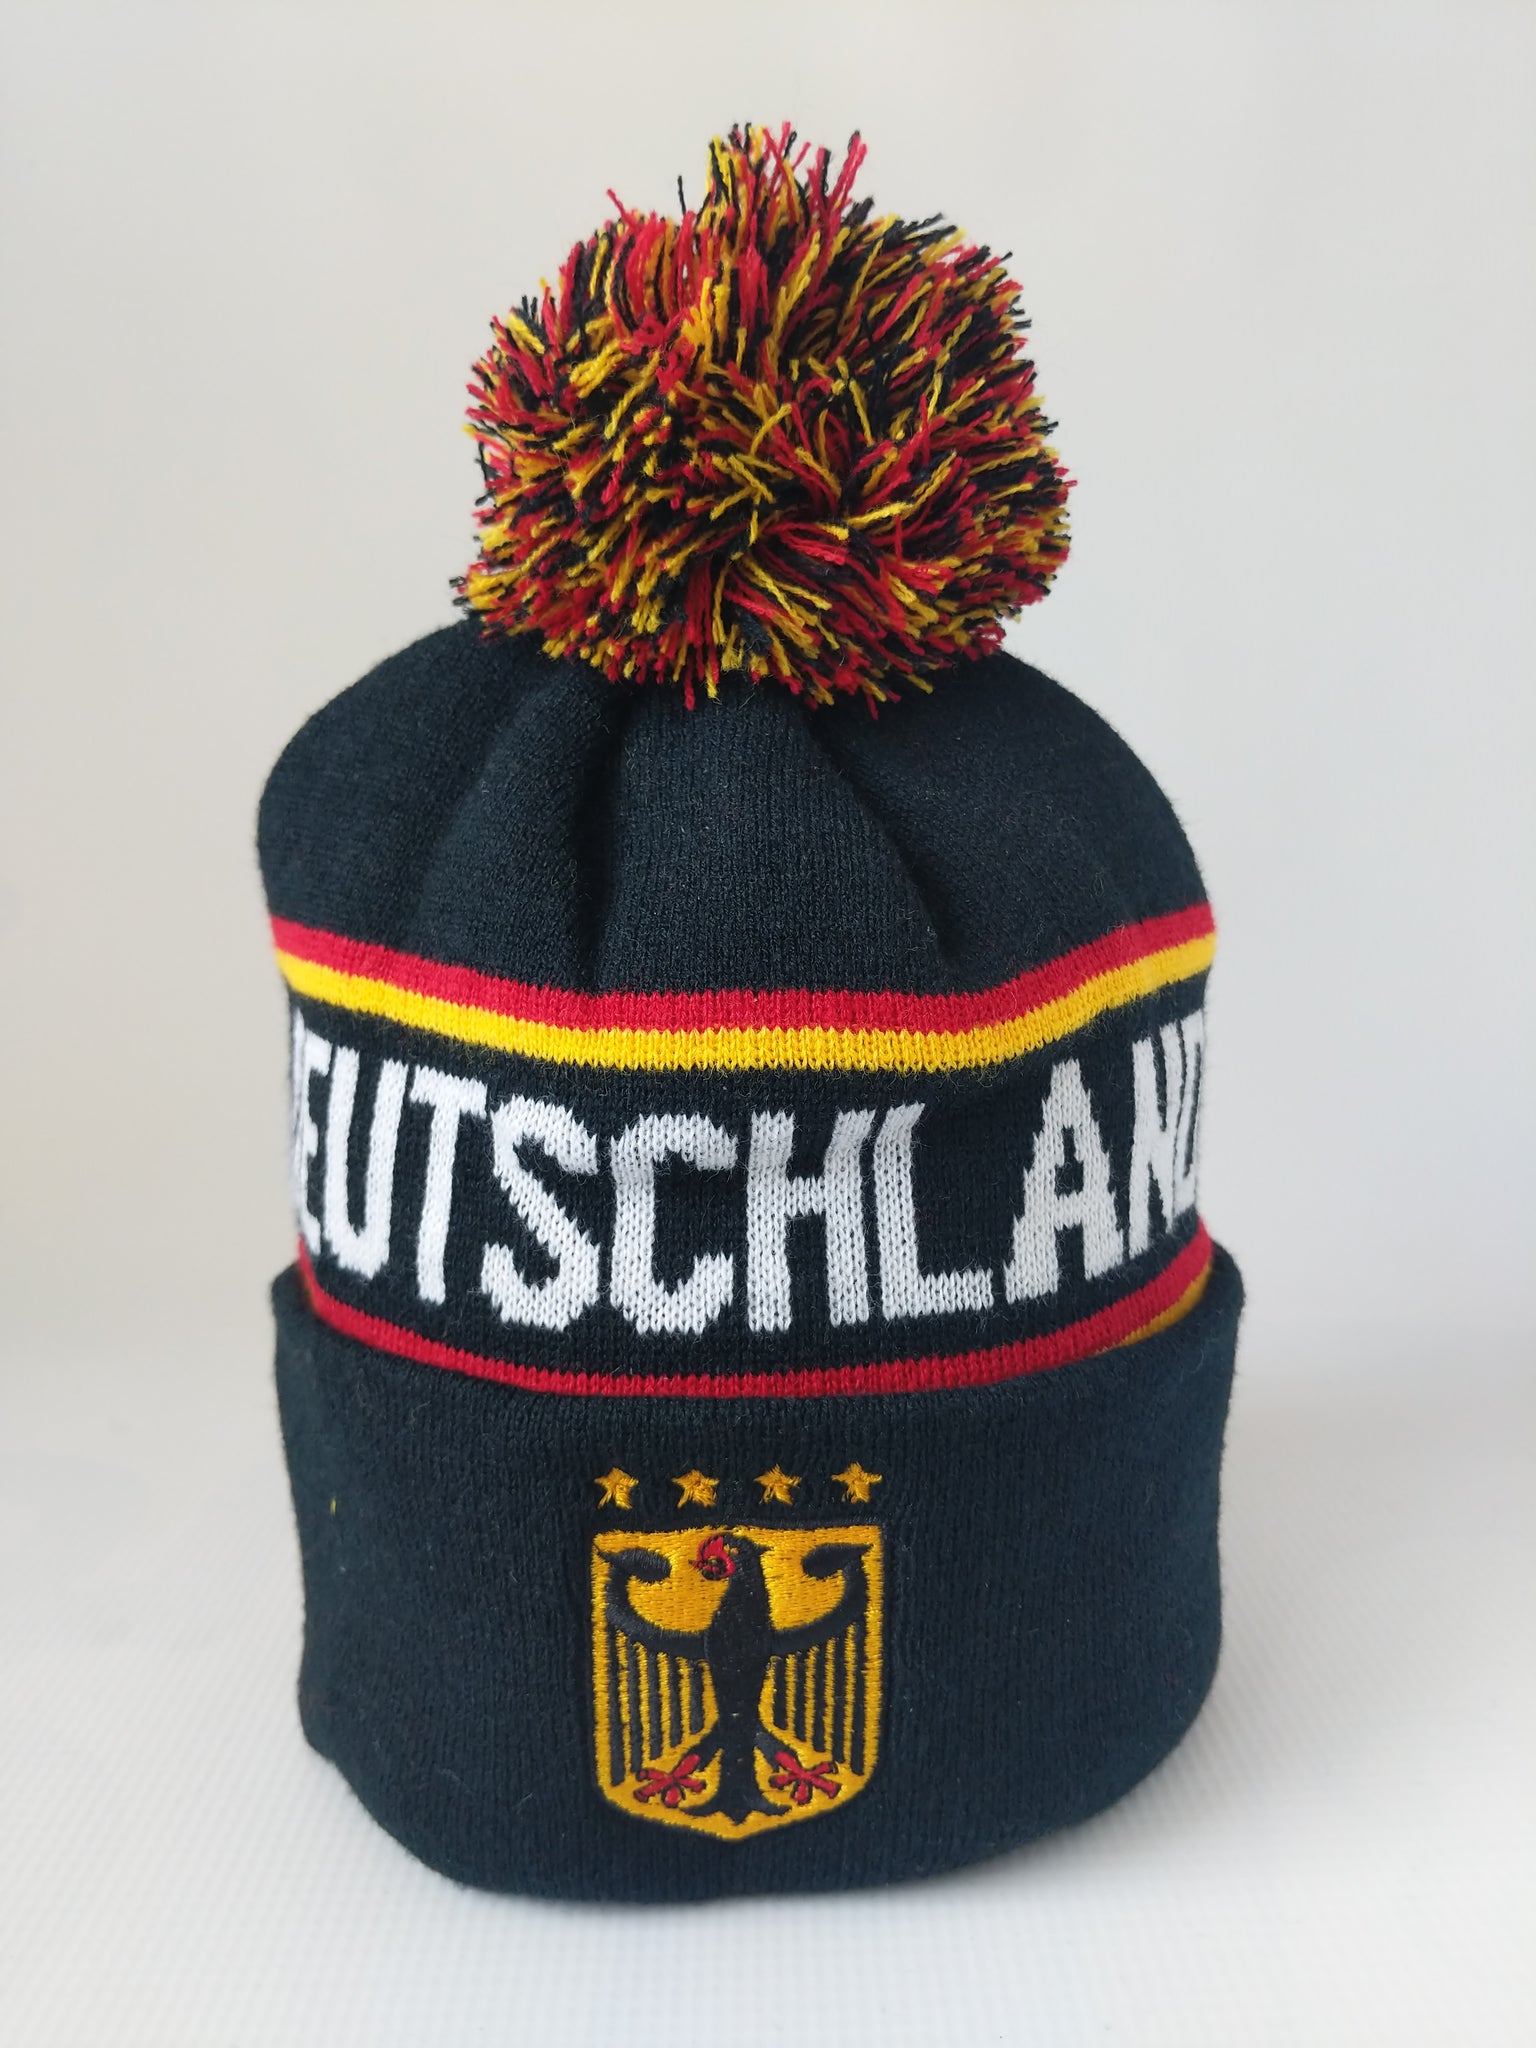 Deutschland/Germany Knit Hat with Pom Pom – German Specialty Imports llc